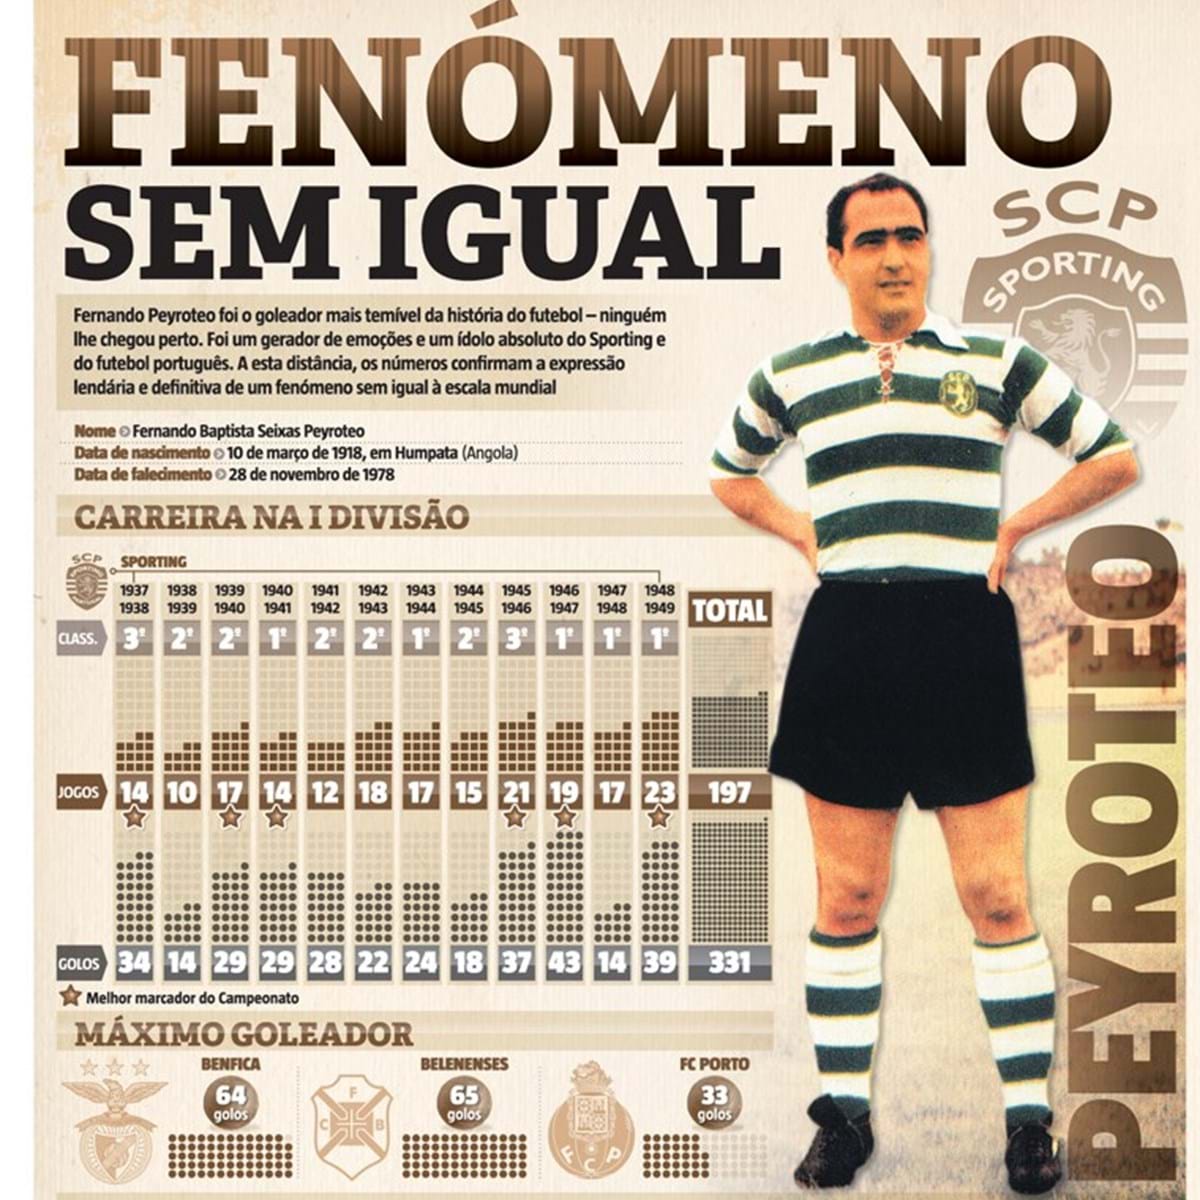 Sporting CP - Hoje celebramos o Centenário do maior goleador de todos os  tempos. Sabe mais sobre Fernando Peyroteo em www.sporting.pt/peyroteo